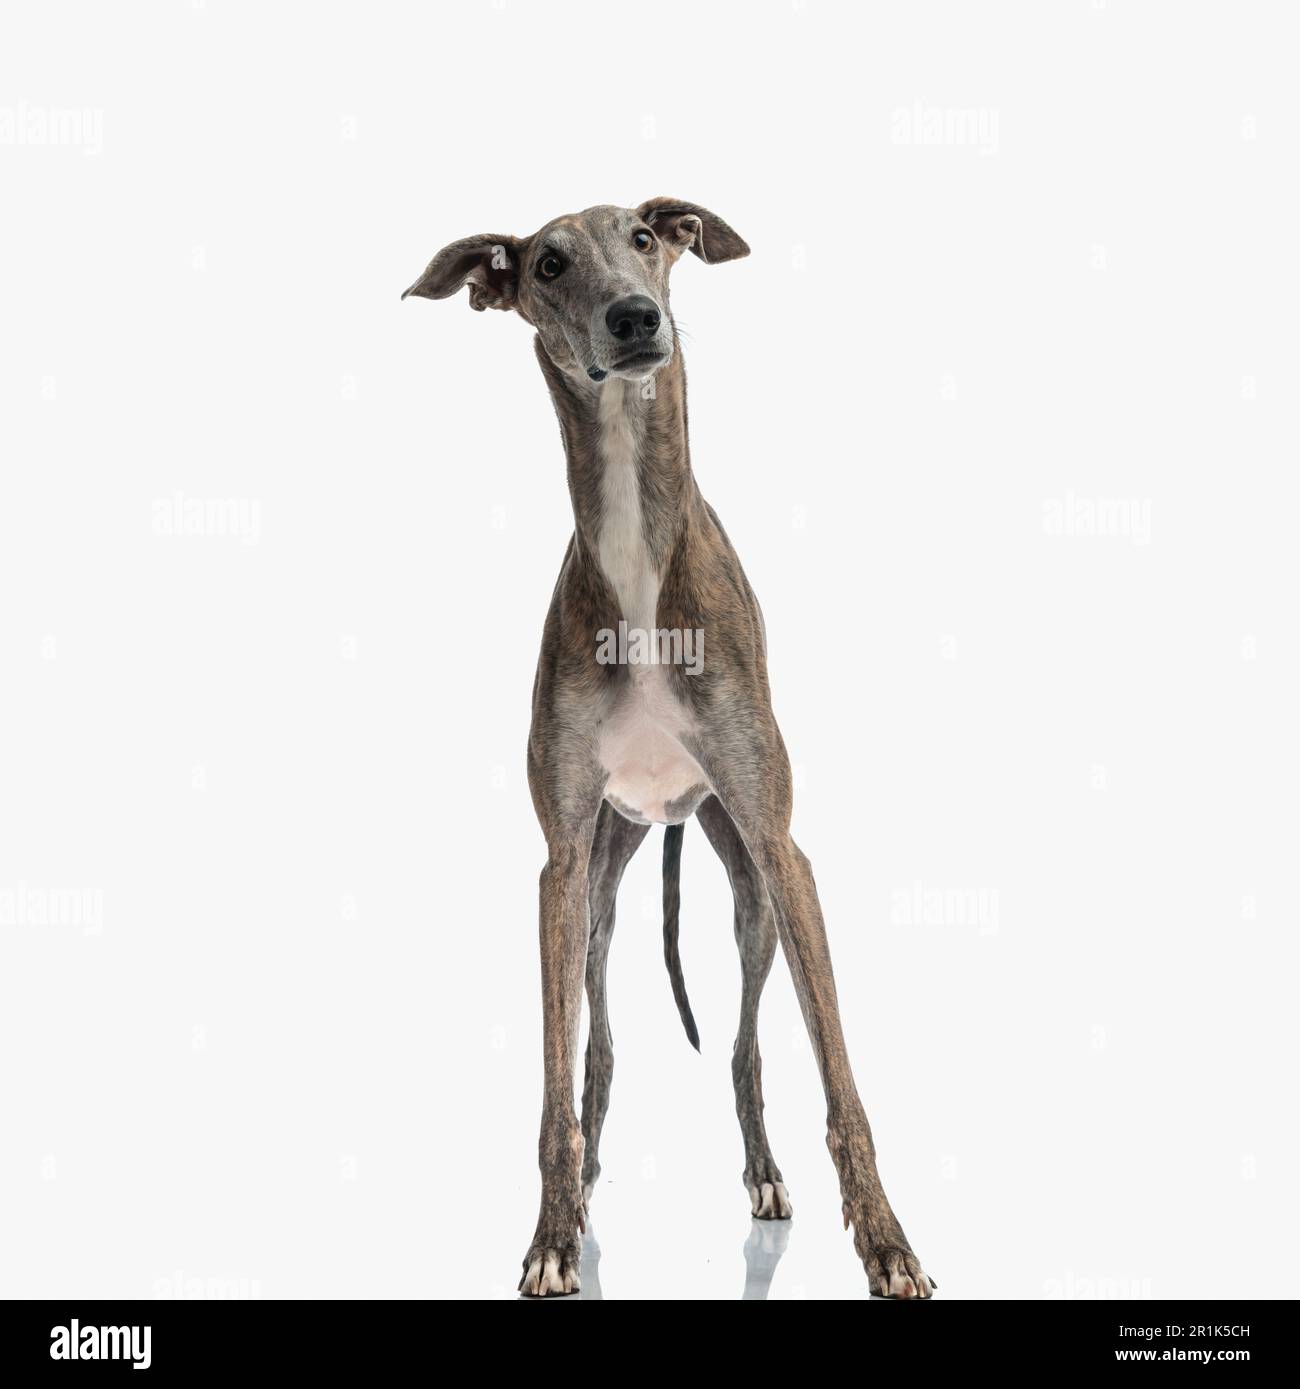 Überraschtes englisches Windhund-Hündchen mit langen Beinen, die wegblickten und vor weißem Hintergrund auf der Hut waren Stockfoto